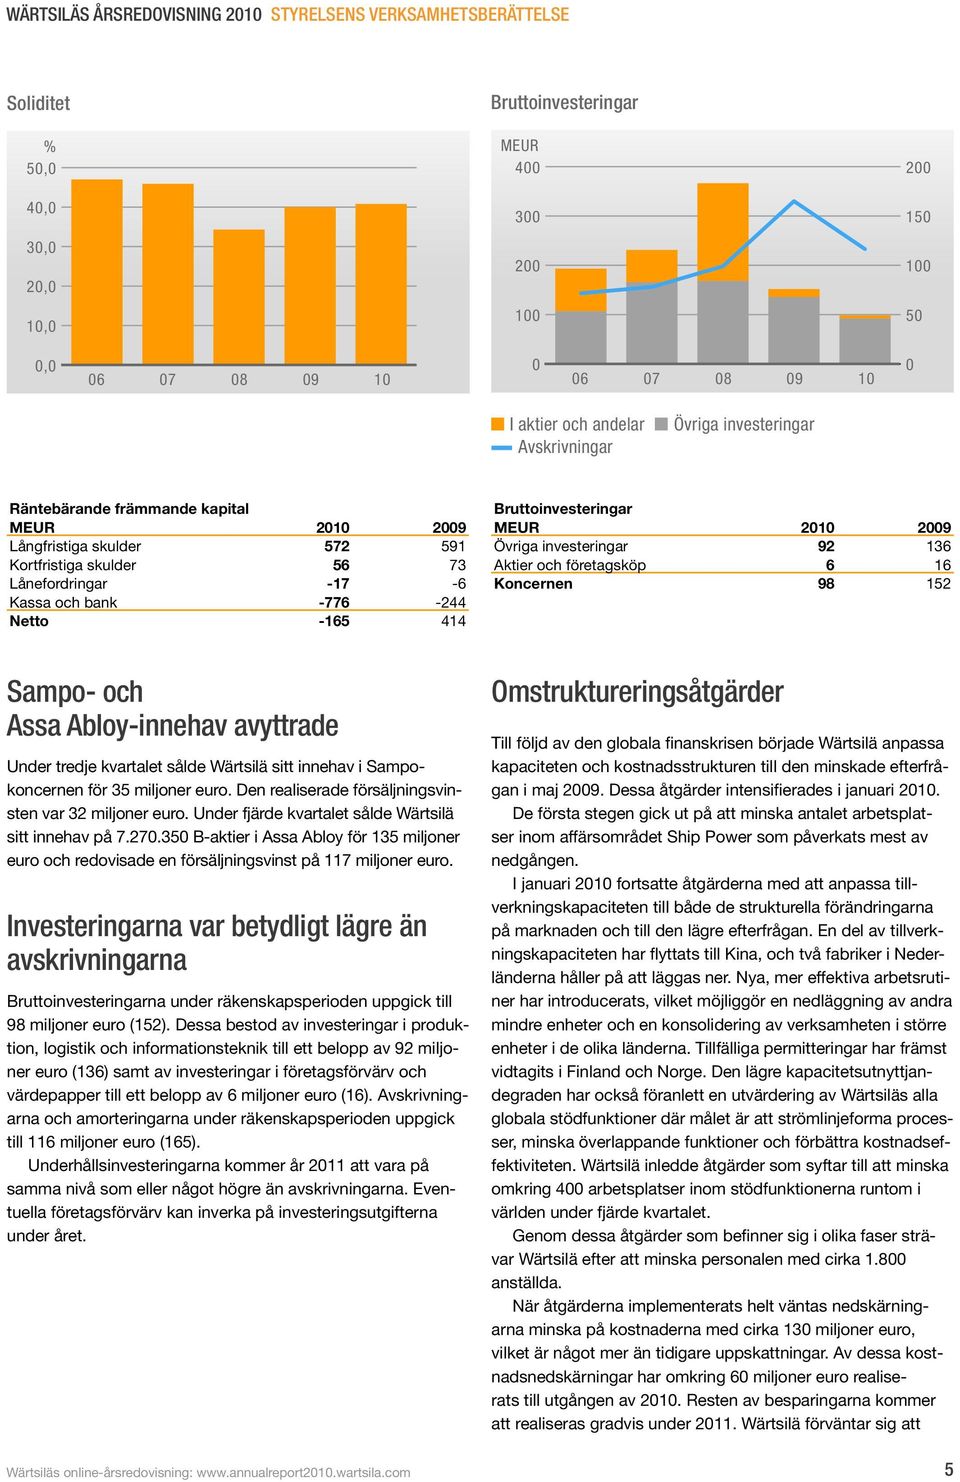 investeringar 92 136 Aktier och företagsköp 6 16 Koncernen 98 152 Sampo- och Assa Abloy-innehav avyttrade Under tredje kvartalet sålde Wärtsilä sitt innehav i Sampokoncernen för 35 miljoner euro.